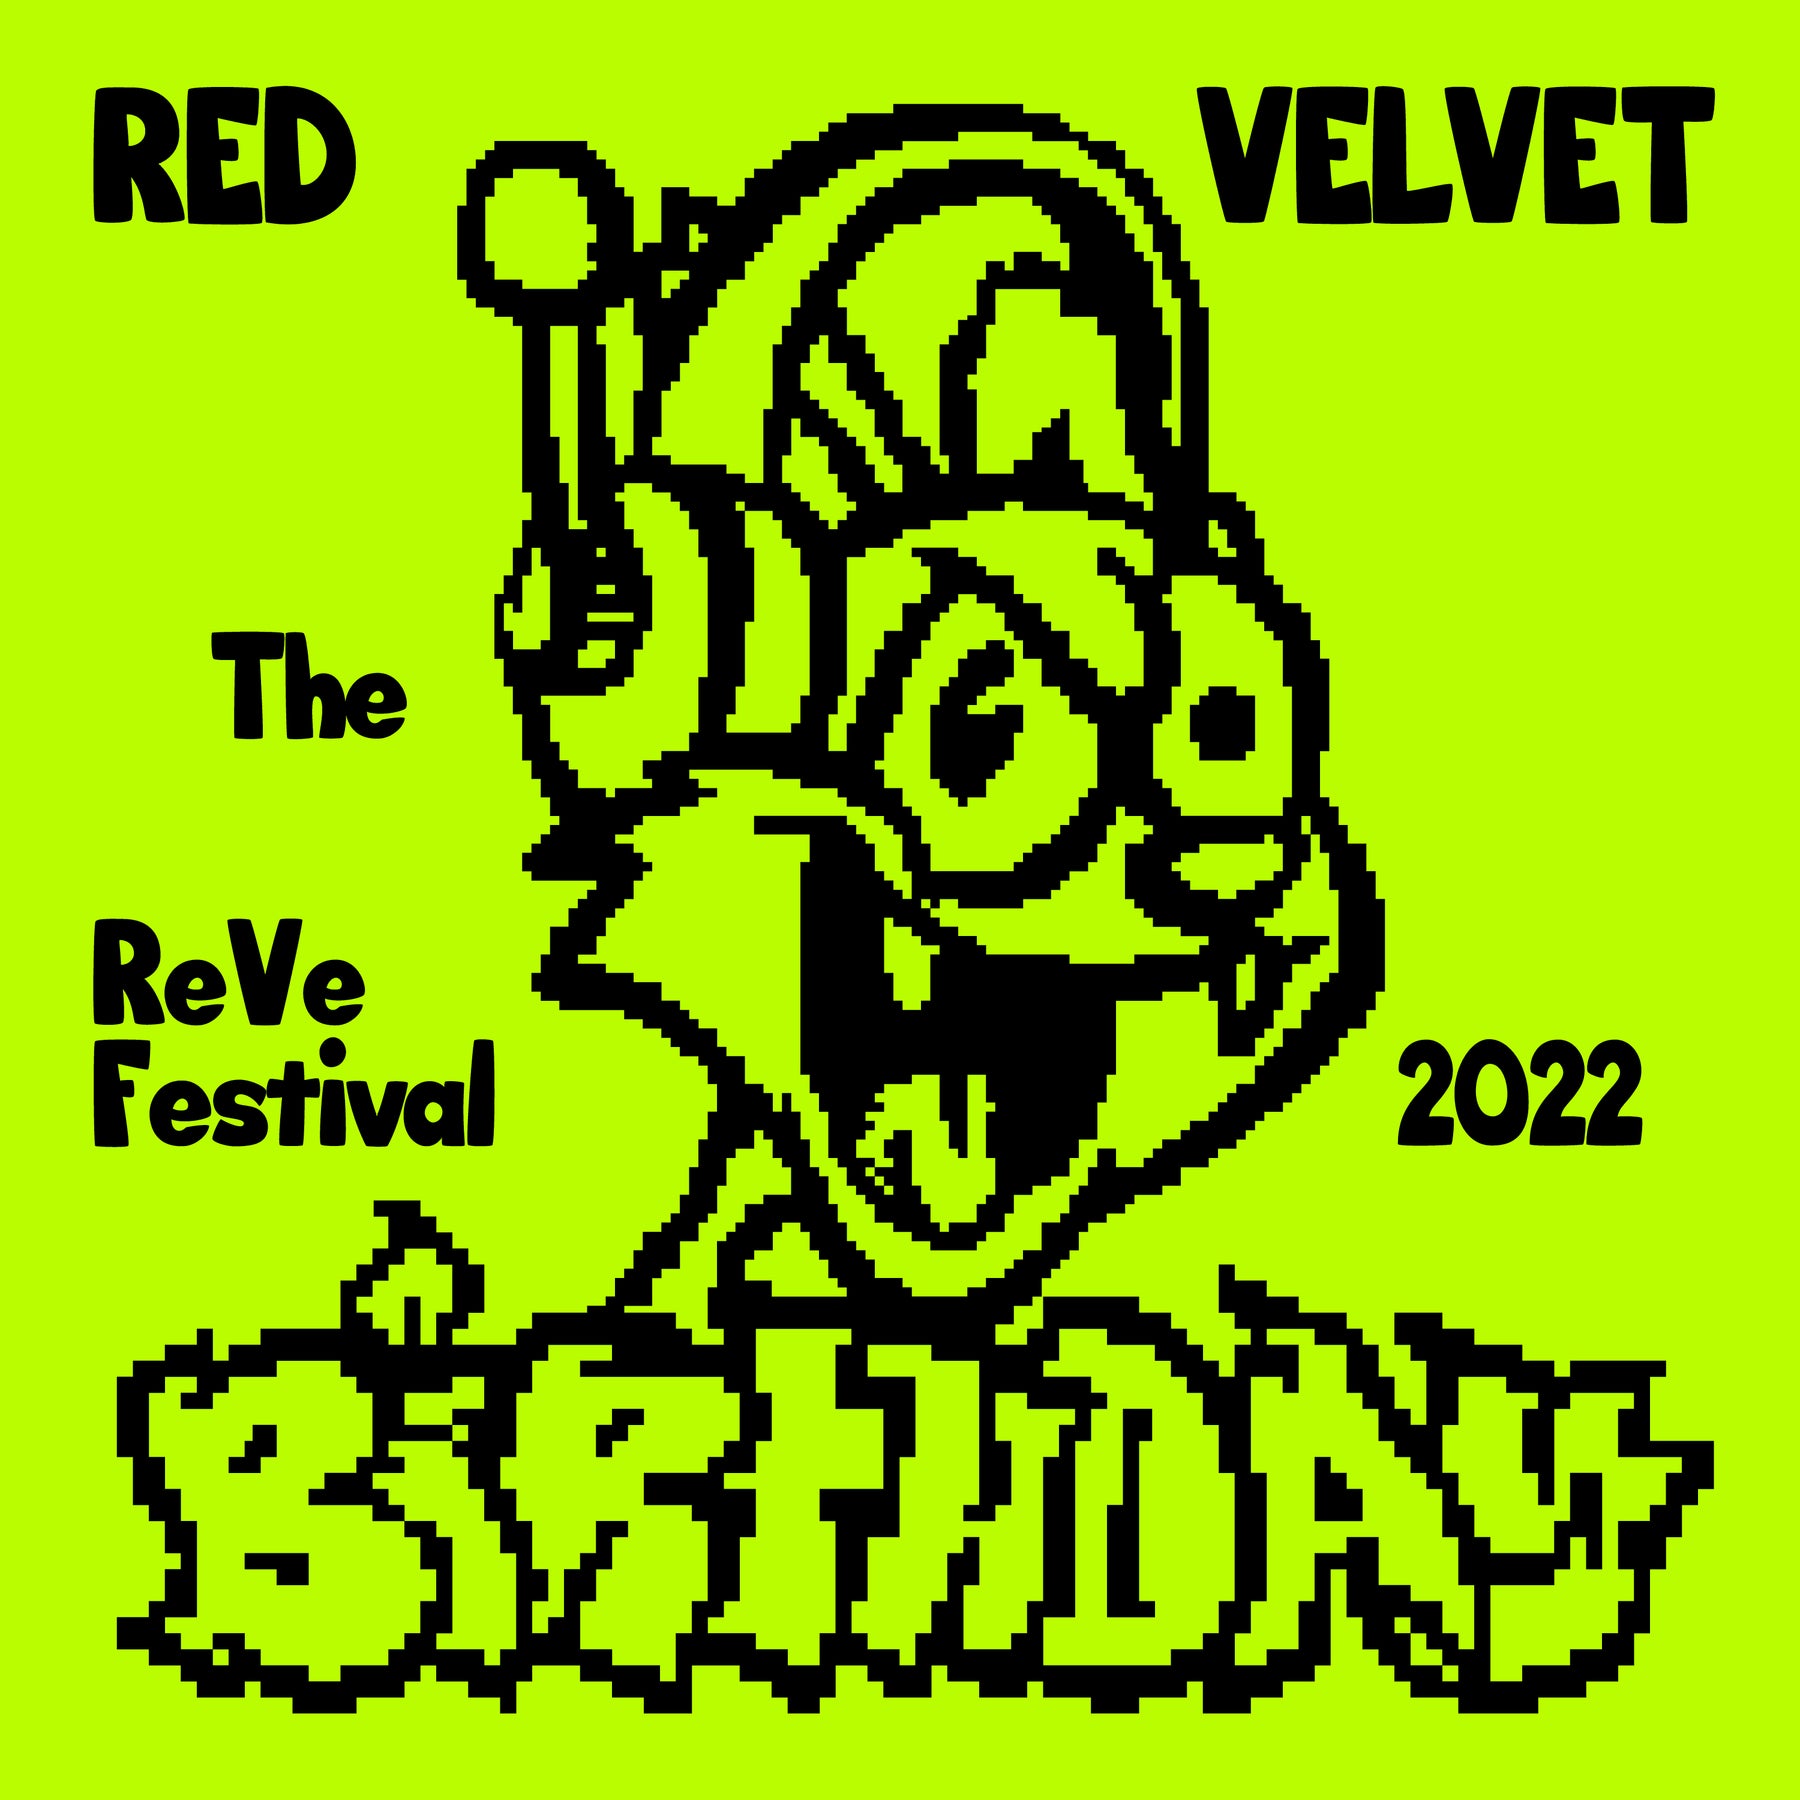 RED VELVET - Mini Album - The ReVe Festival 2022 - Birthday - Cake